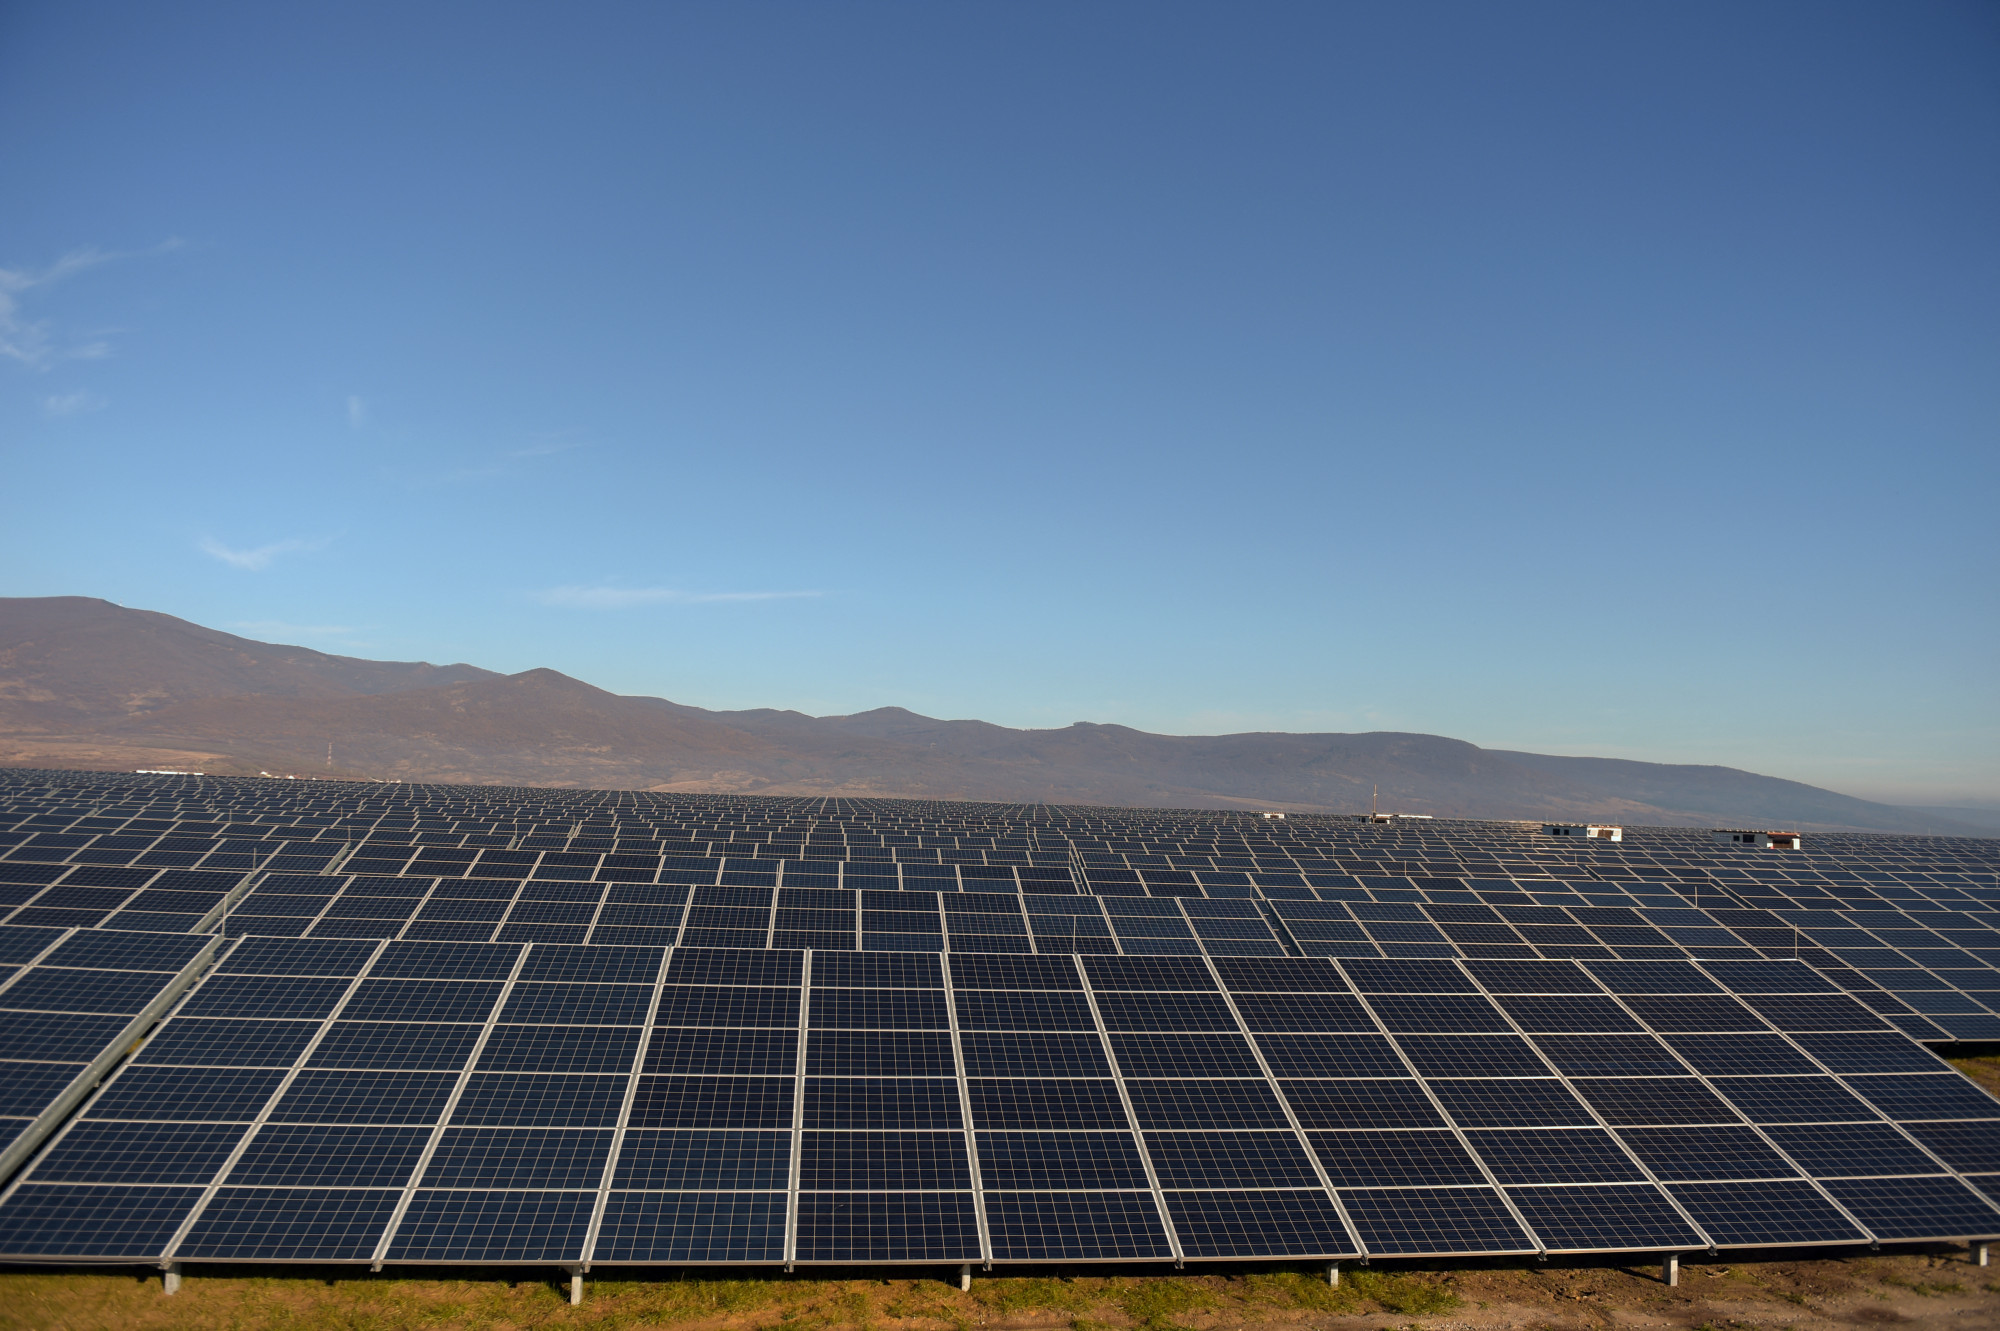 A visontai napelempark, amit a Mátrai Erőmű üzemeltet. Nem az ilyen nagyteljesítményű termelőkre vonatkozik az új szabályozás, hanem a kisebb, háztartási méretű napelemes rendszerek visszatáplálását szüntetik meg